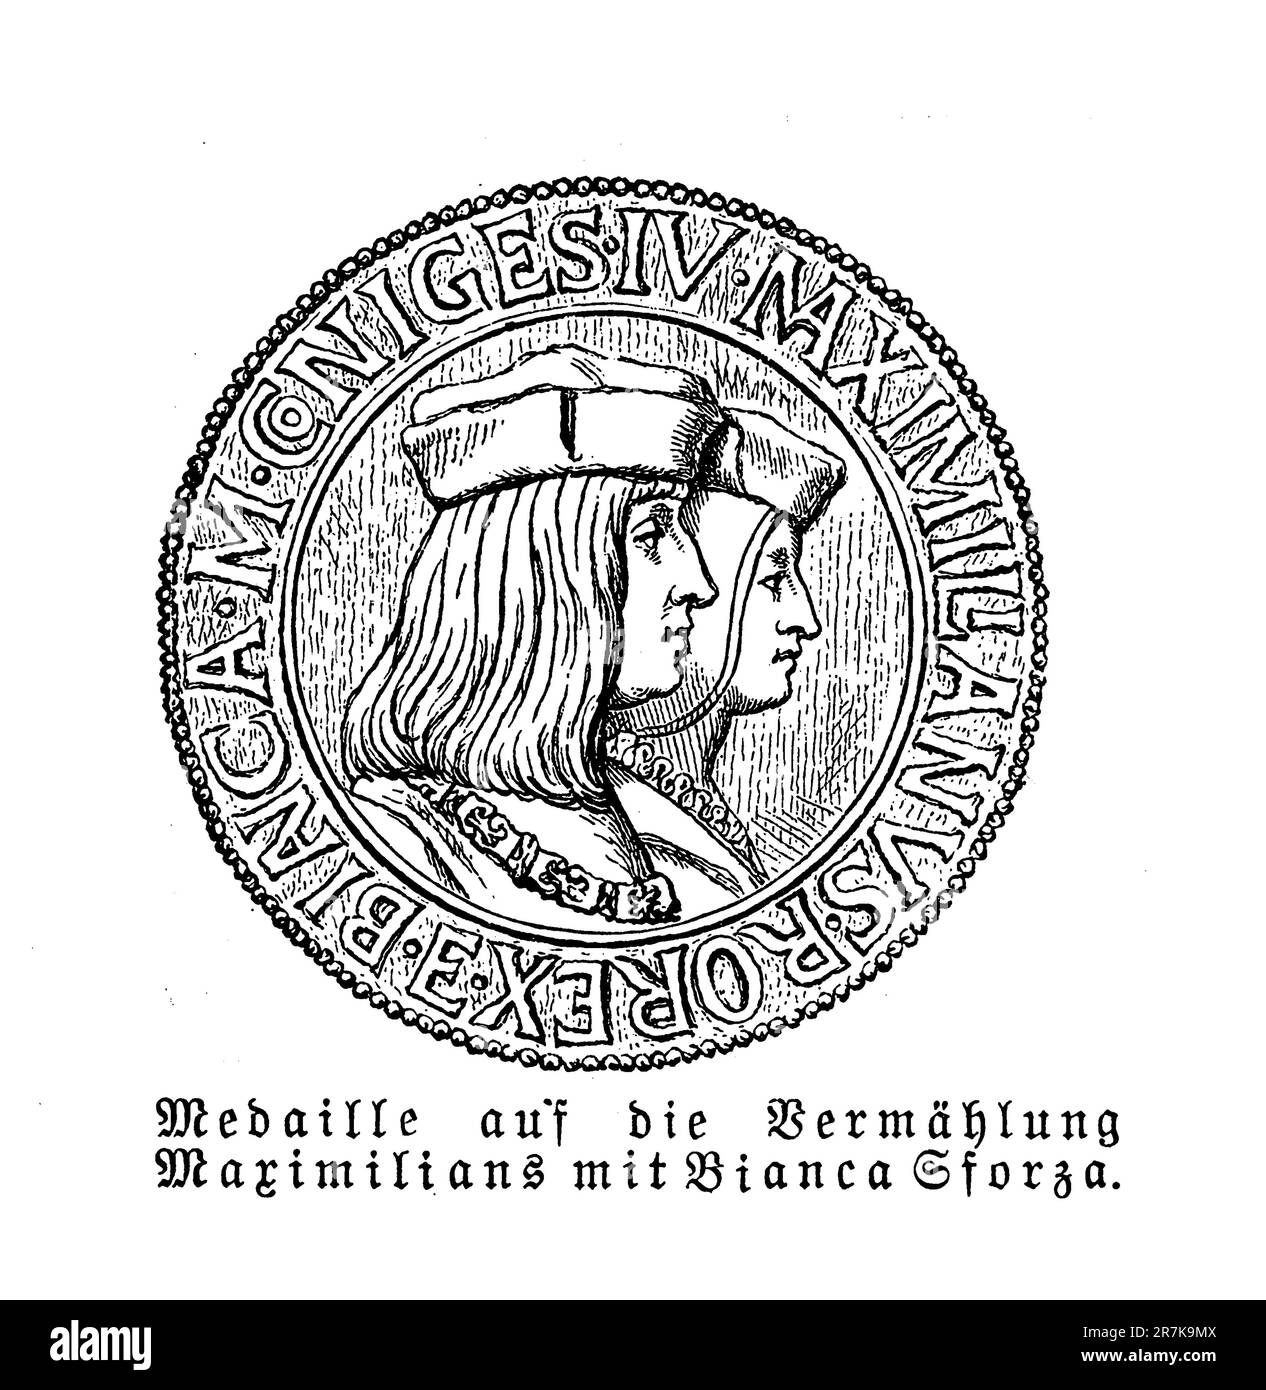 Medaille mit den Porträts von Maximilian I. Heiliger römischer Kaiser und seiner zweiten Frau Bianca Maria Sforza. Er erklärte sich zum Kaiser gewählt und brach die Tradition einer päpstlichen Krönung. Stockfoto